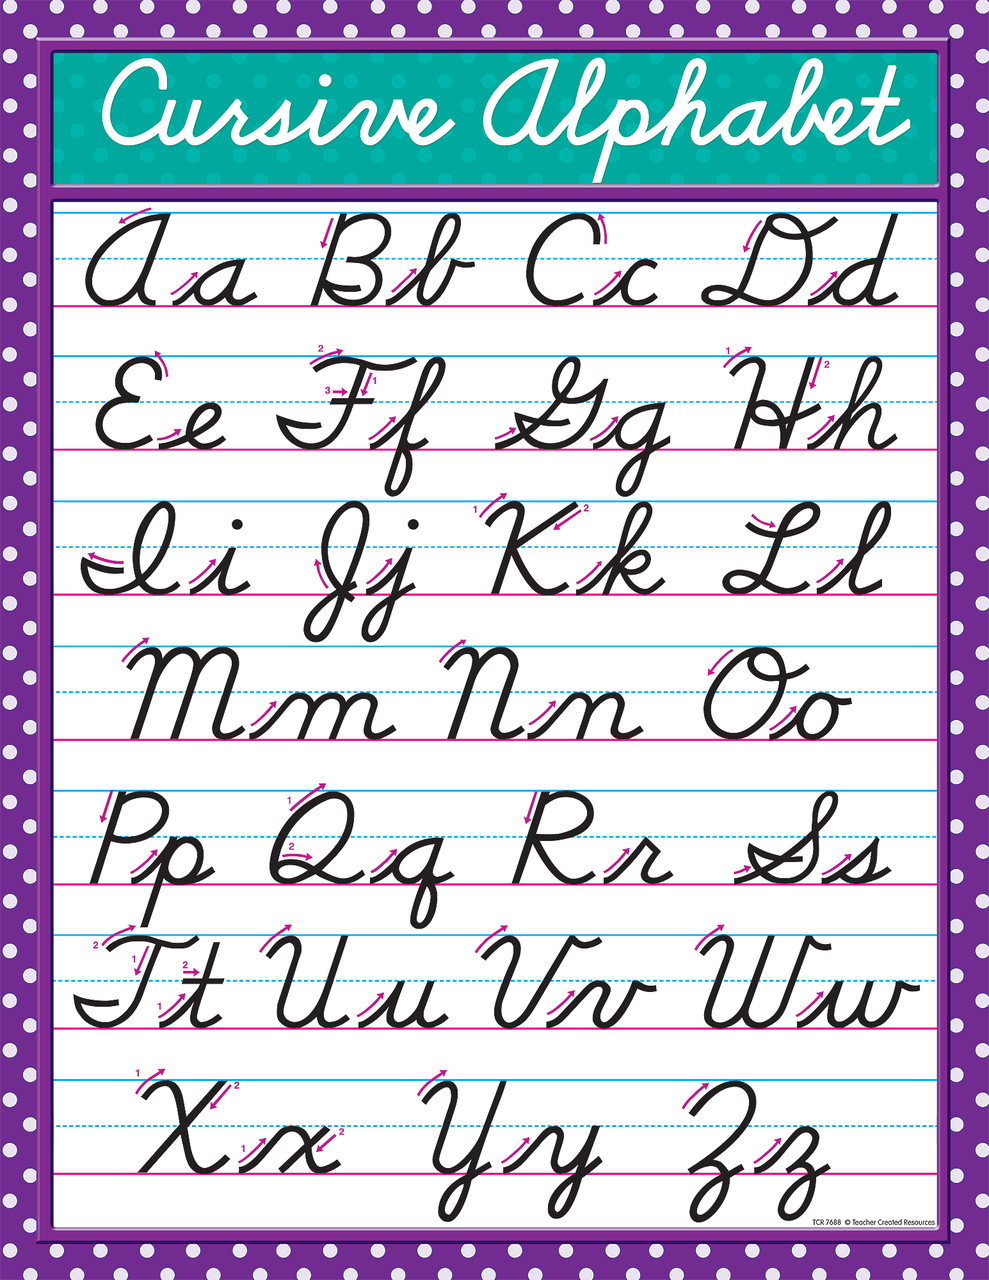 cursive alphabet bubble cursive word spelling architecture